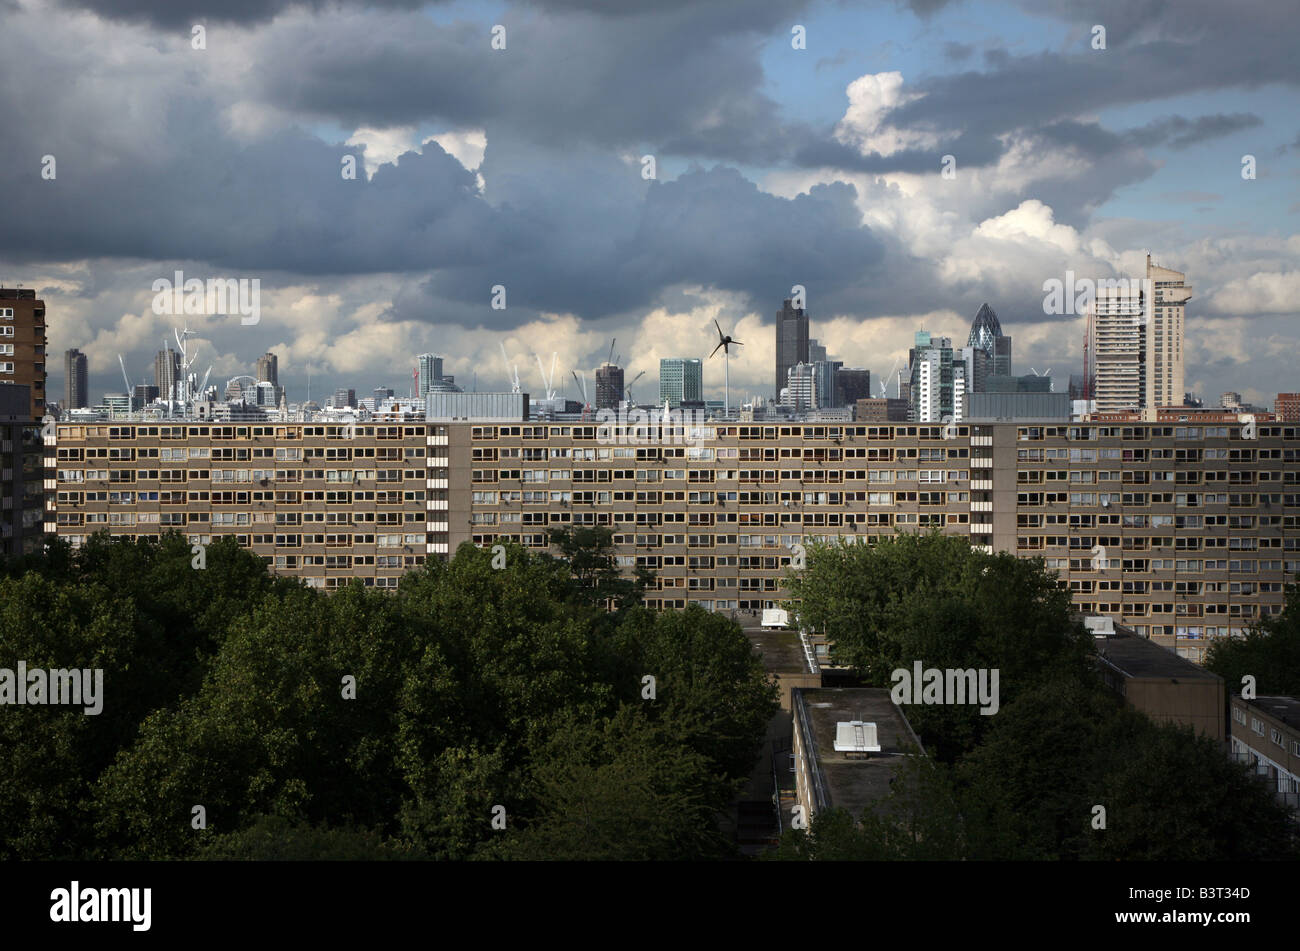 Ciudad de Londres visto desde el Heygate Estate, Elephant & Castle, Londres. Foto de stock